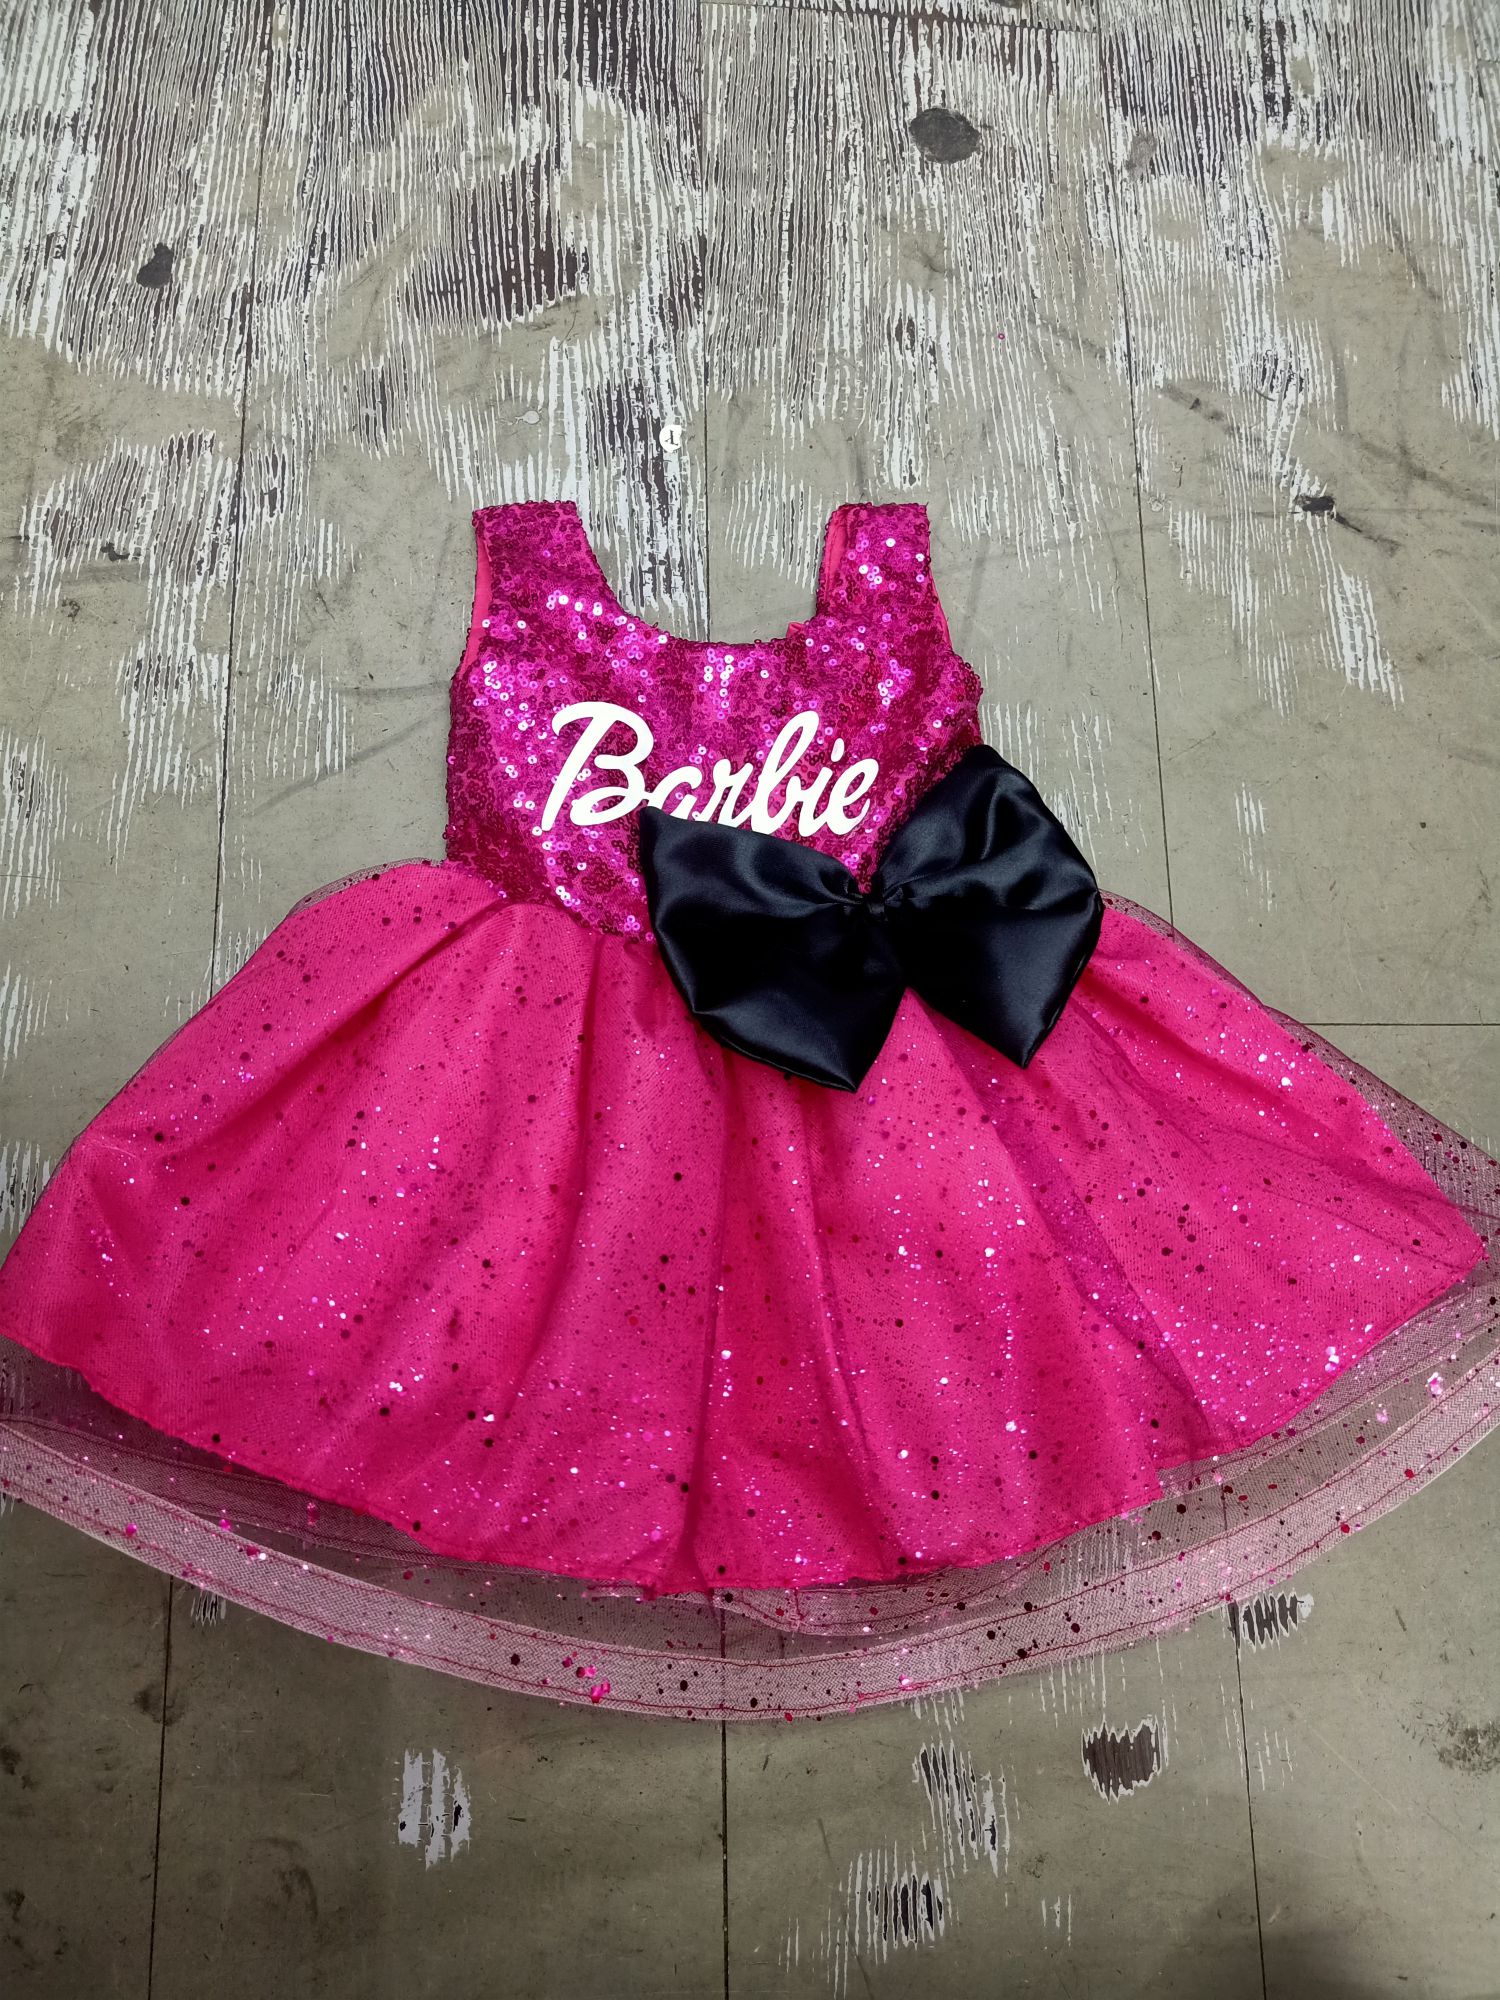 BARBIE TUTU DRESS | Barbie theme party, Girls barbie birthday party,  Birthday party outfits